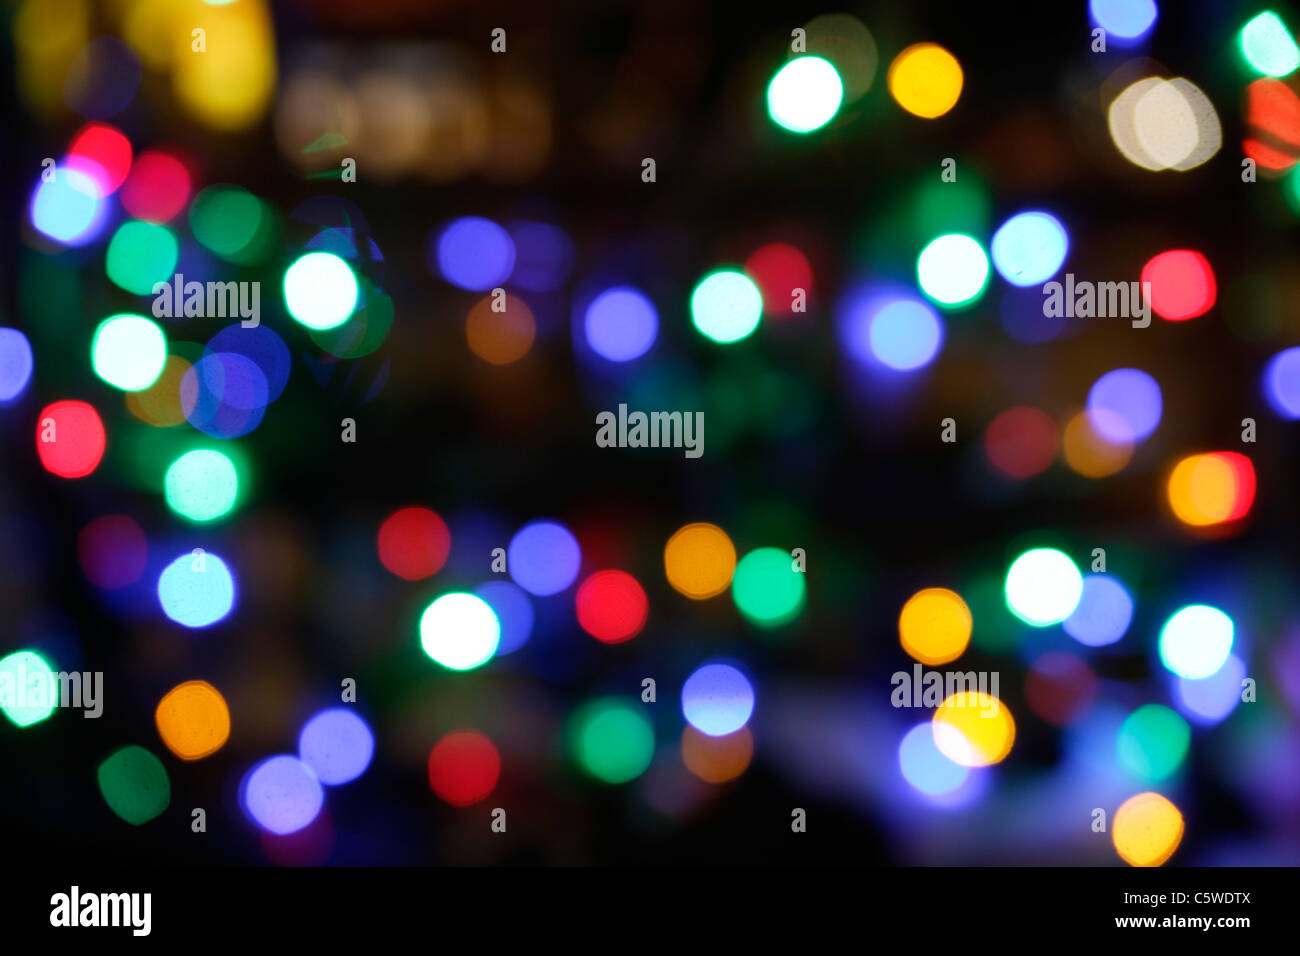 Alemania, Munich, iluminadas las luces de hadas en la noche de Navidad, defocussed Foto de stock